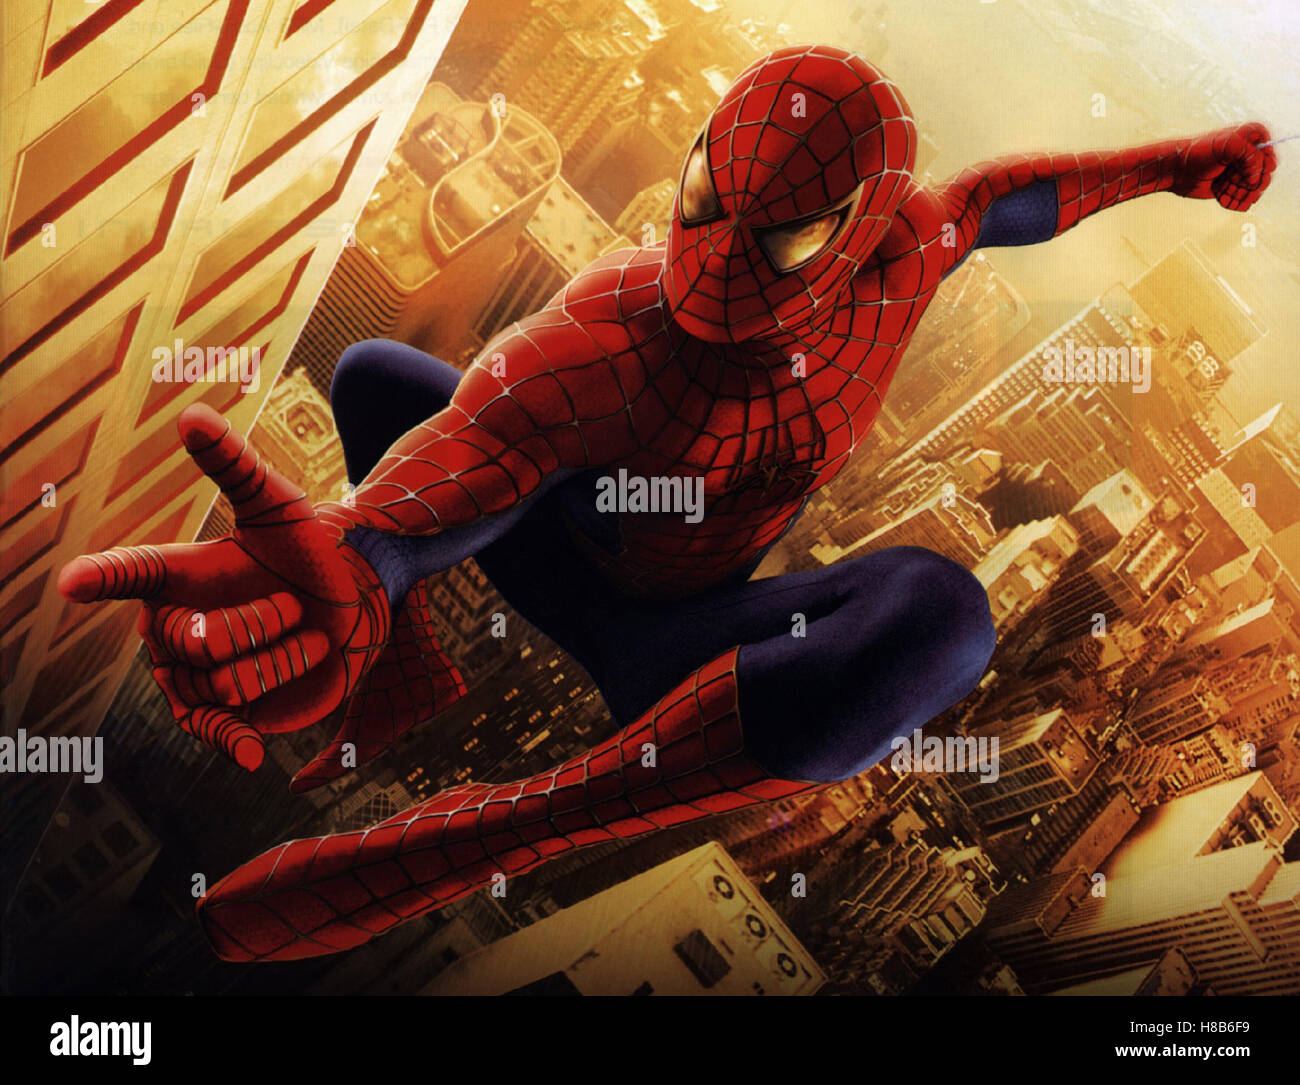 Spiderman, spiderman) USA 2002, Regie: Sam Raimi, Tobey Maguire als Spiderman, Stichwort: Spinnenmensch, detenuti, Straßenschlucht, Wolkenkratzer, Fantasy-Gestalt Foto Stock